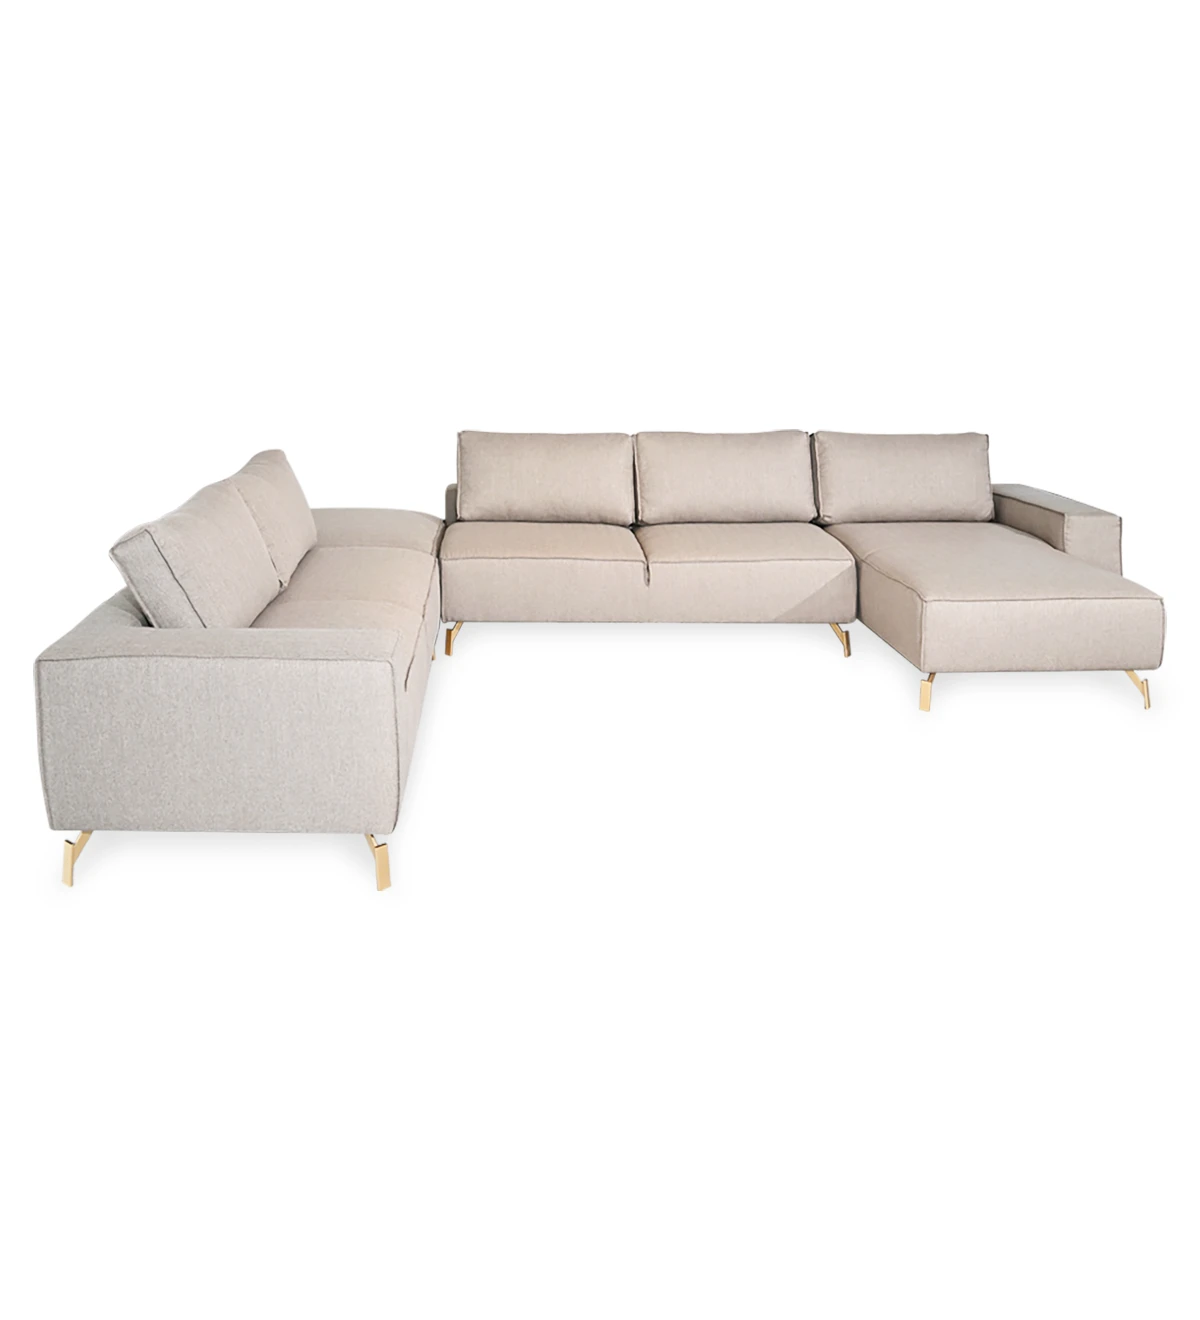 Sofá de esquina con chaise longue y puff, tapizado en tejido, con pies de metal lacado en oro.